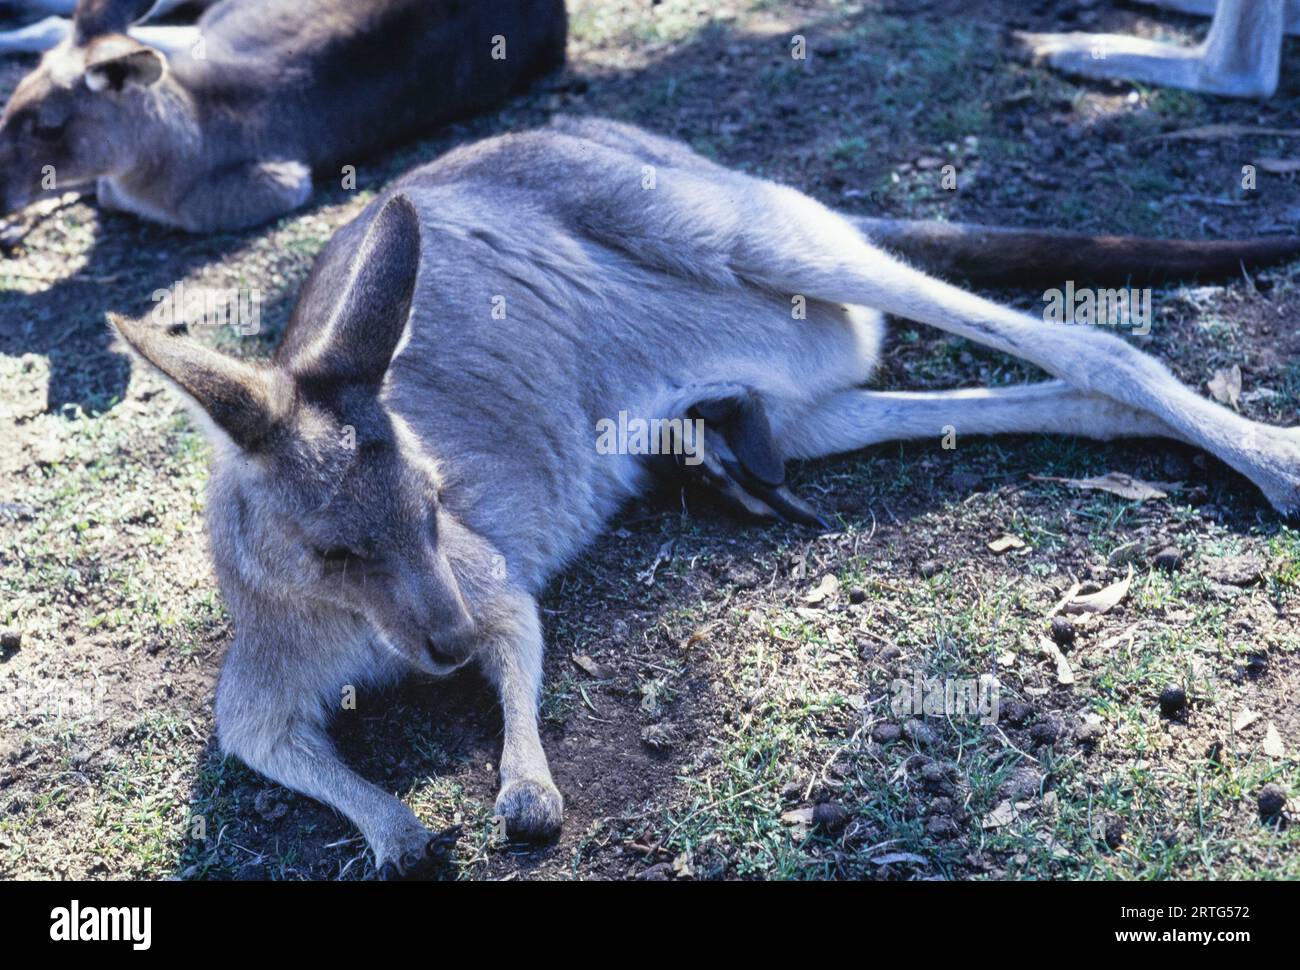 Melbourne, Australie décembre 1999 : une capture franche d'un kangourou australien dans les années 1990 Banque D'Images